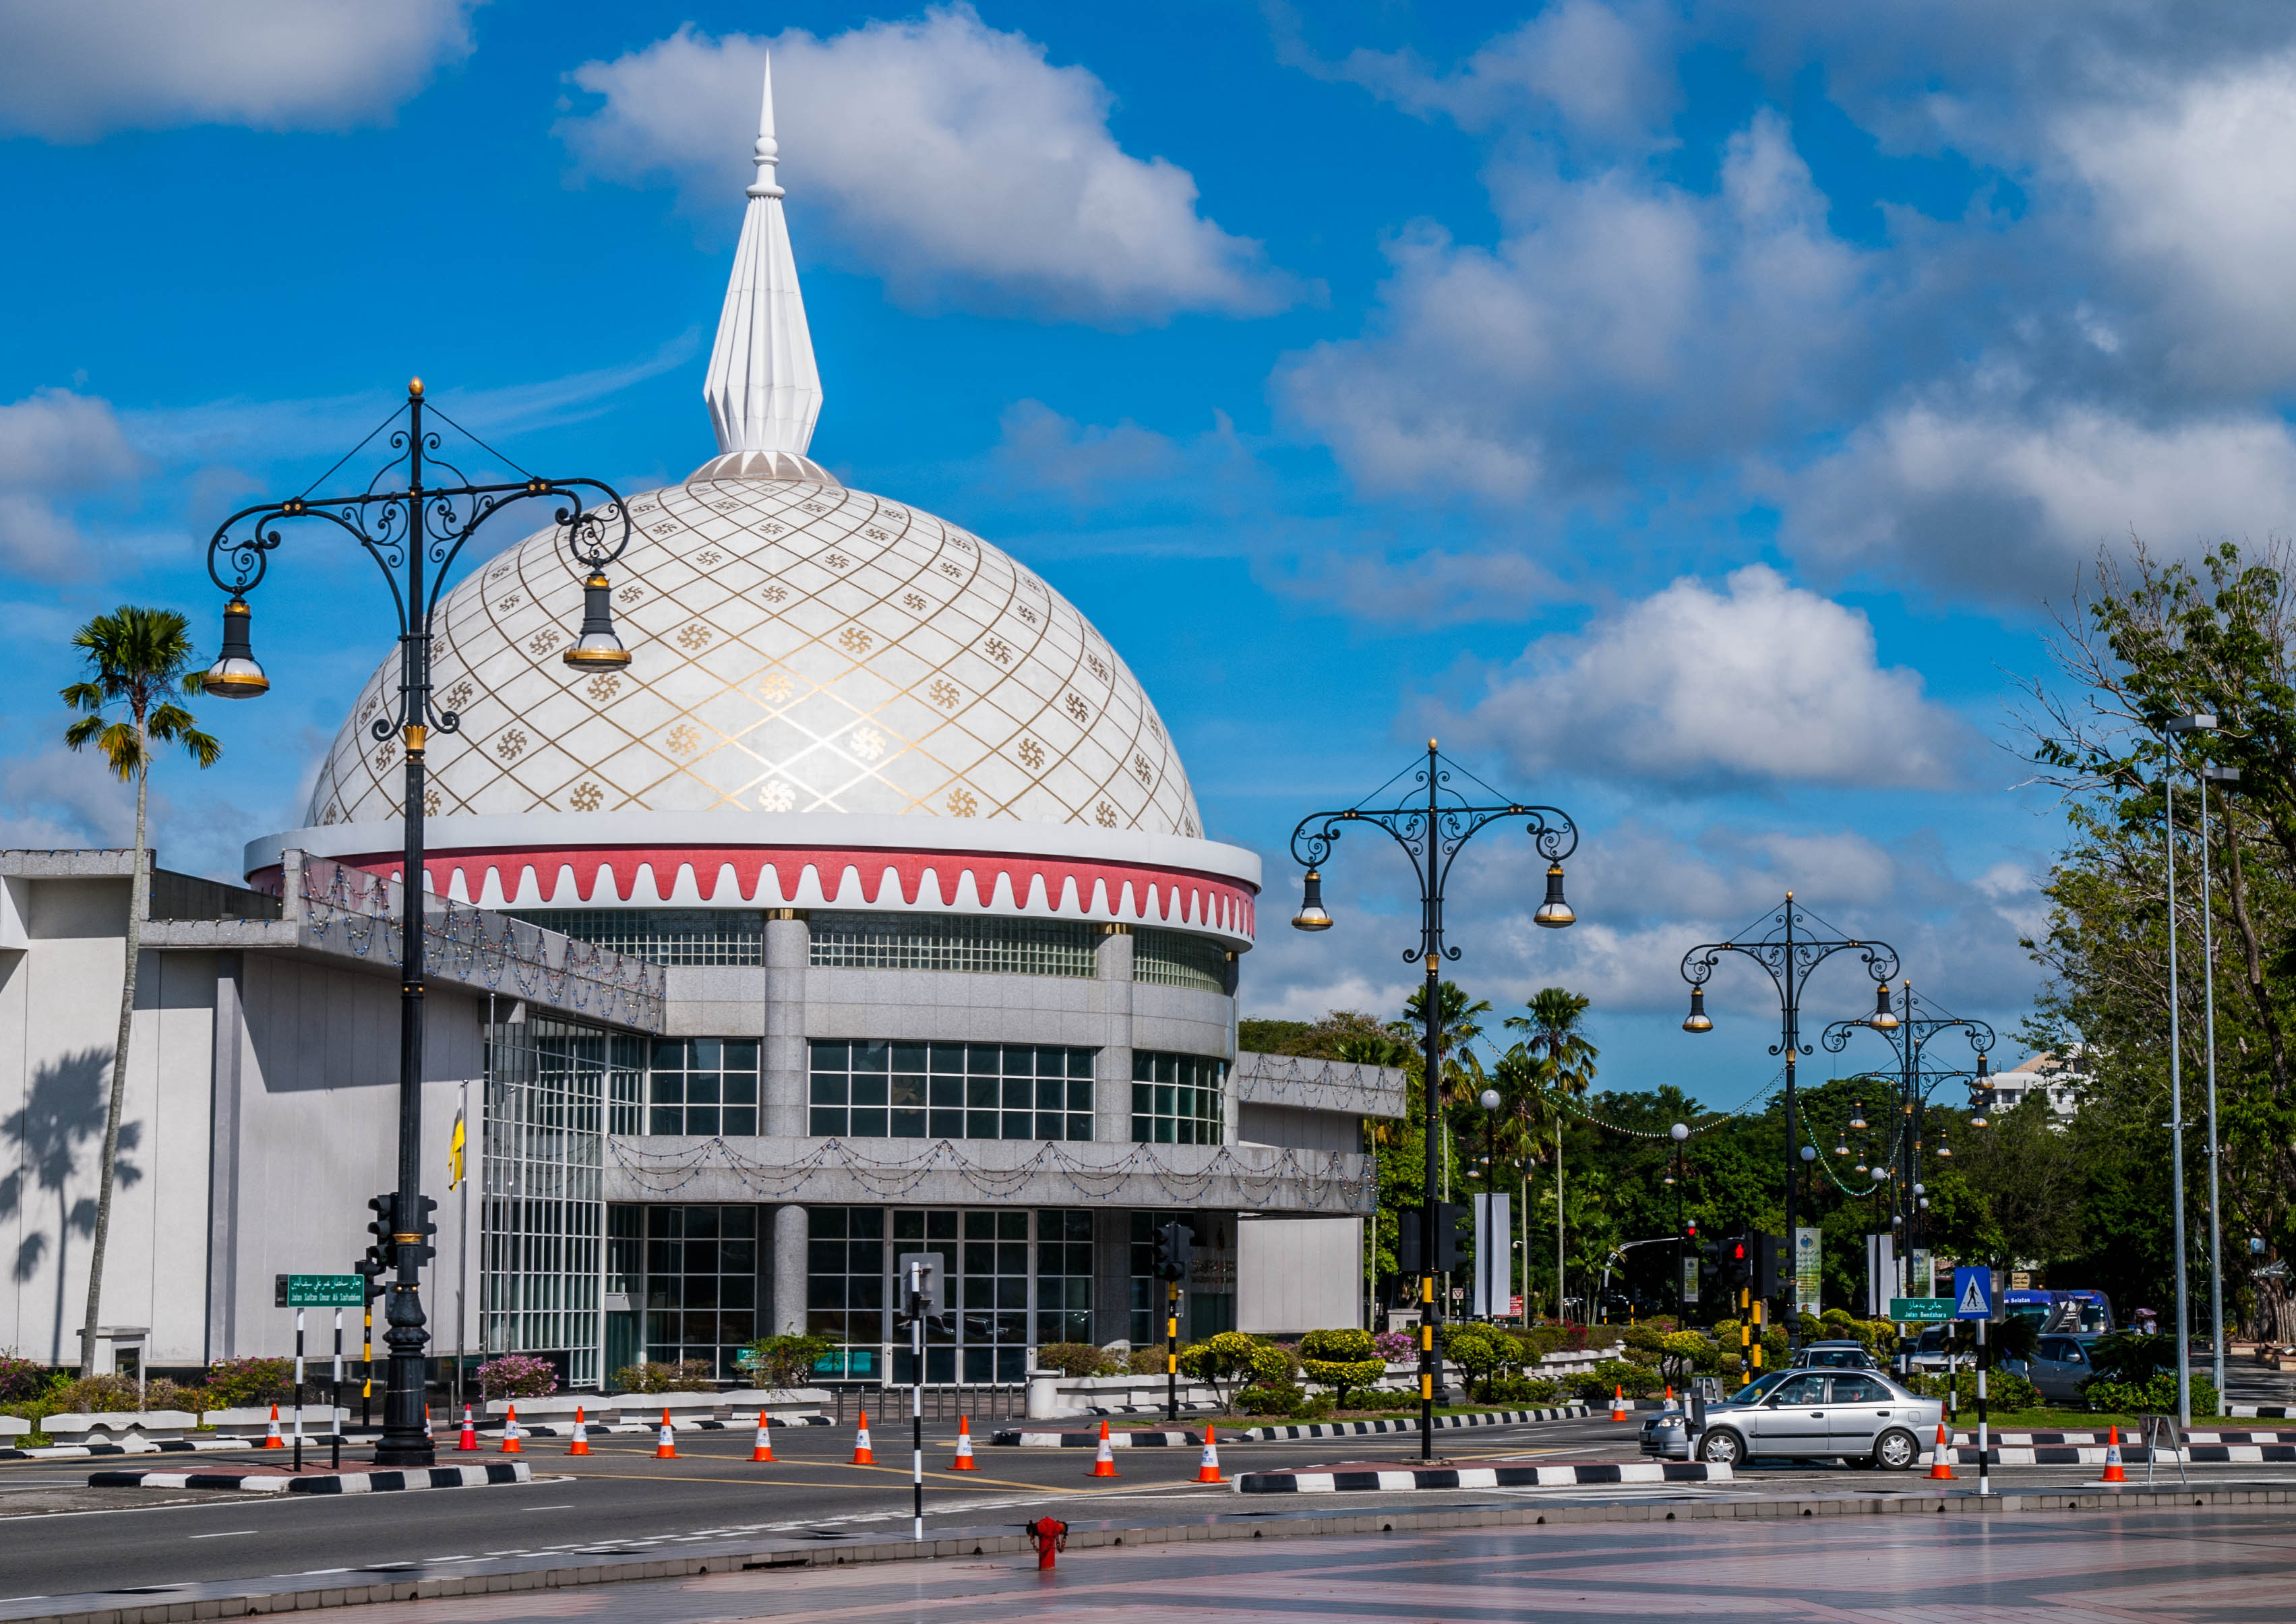 Thử một lần đặt chân đến Vương quốc Hồi giáo Brunei